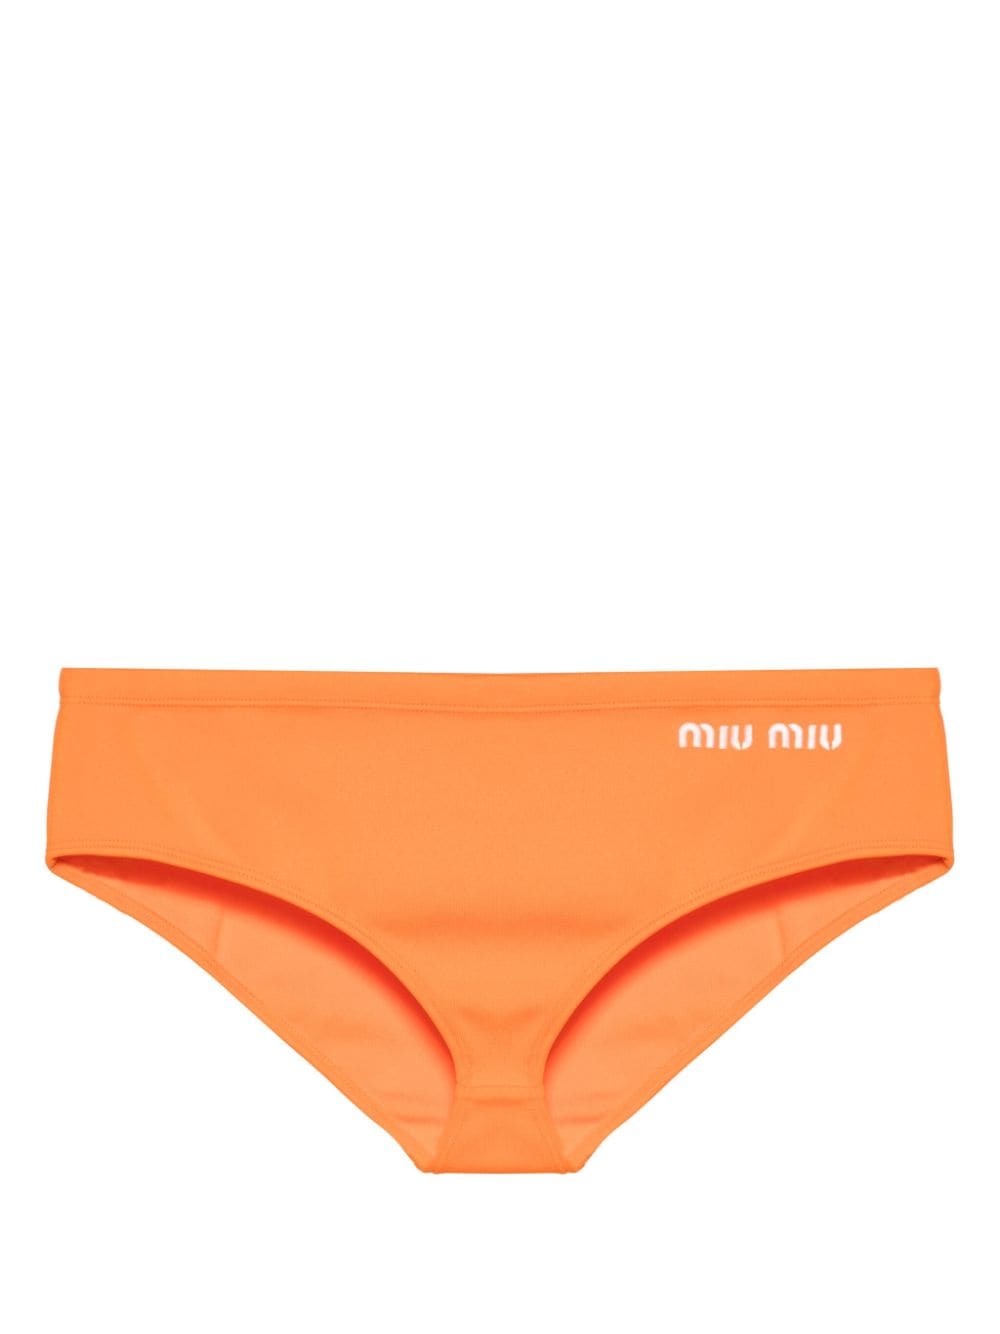 Miu Miu embroidered-logo bikini bottoms - Orange von Miu Miu